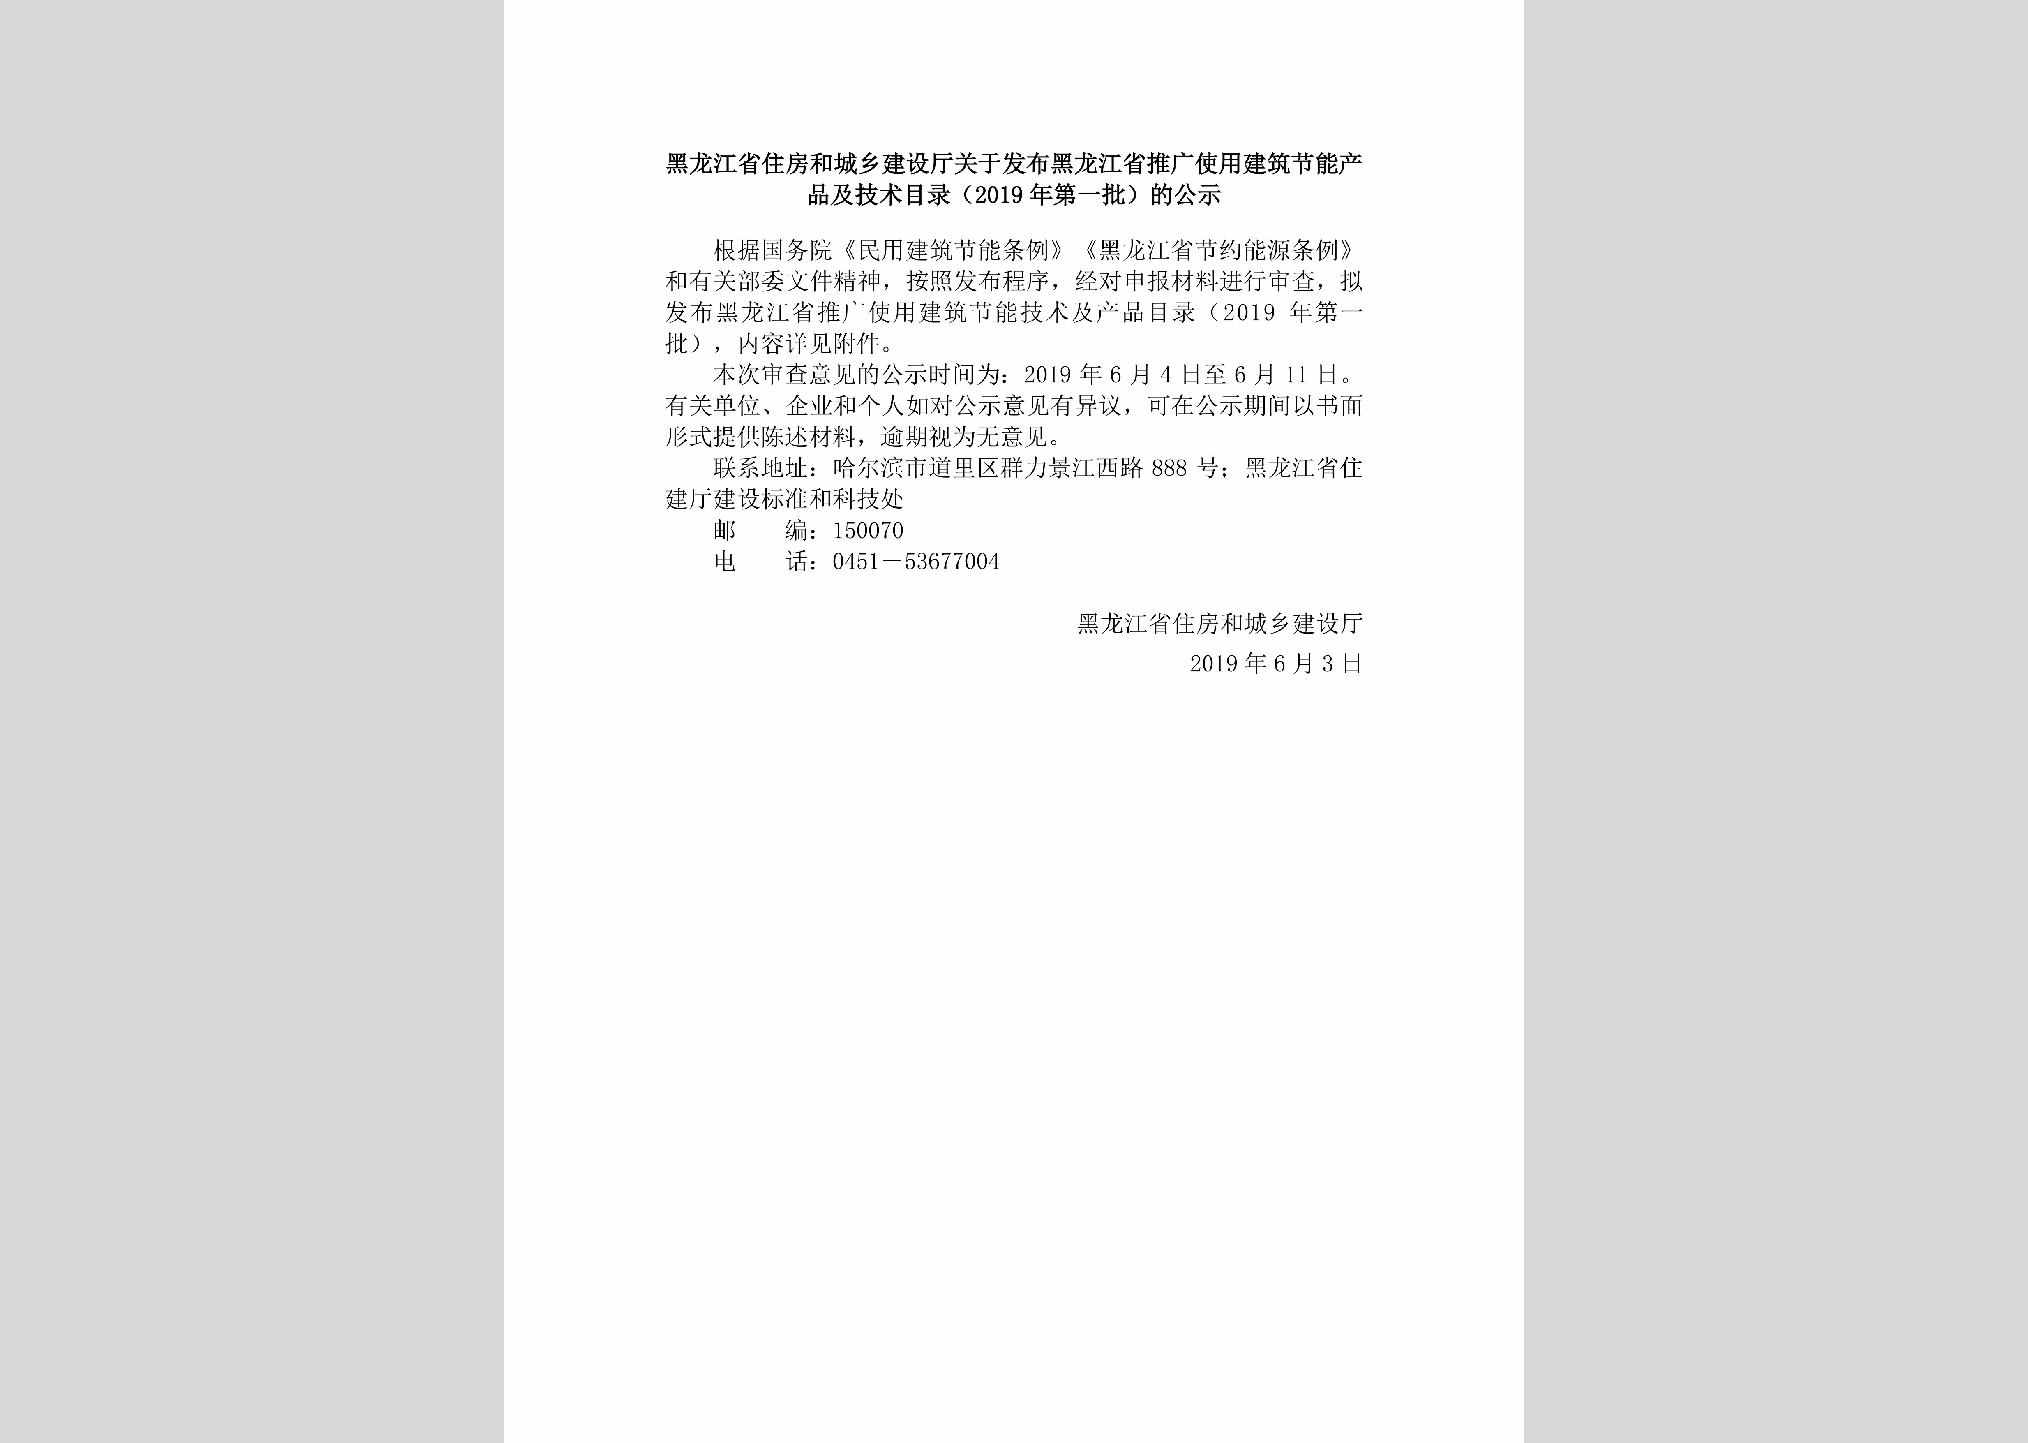 HLJ-TGSYJZJN-2019：黑龙江省住房和城乡建设厅关于发布黑龙江省推广使用建筑节能产品及技术目录（2019年第一批）的公示